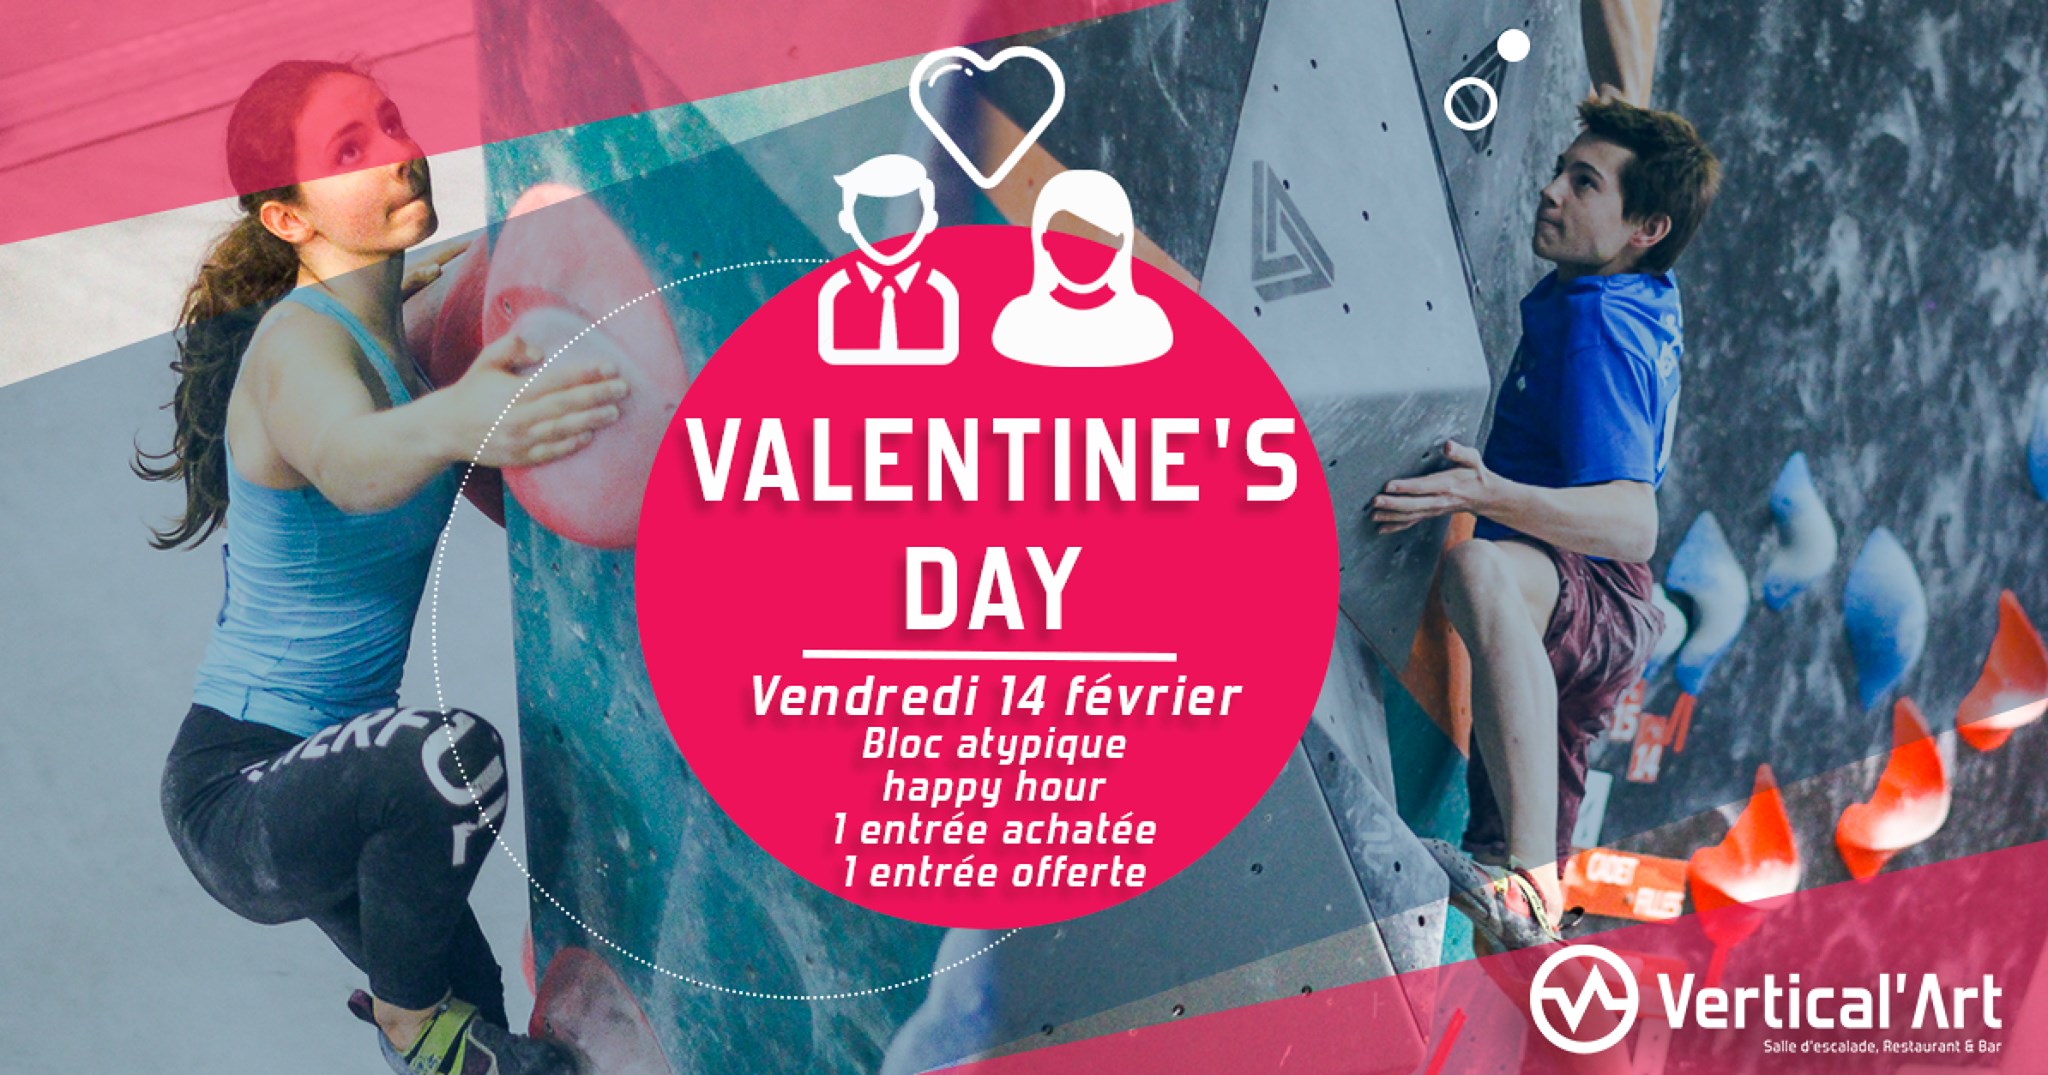 Soirée saint Valentin à Lyon - Vertical'art Lyon organise une soirée speciale st valentin - saint valentin sportive - romantisme - amour à Lyon -